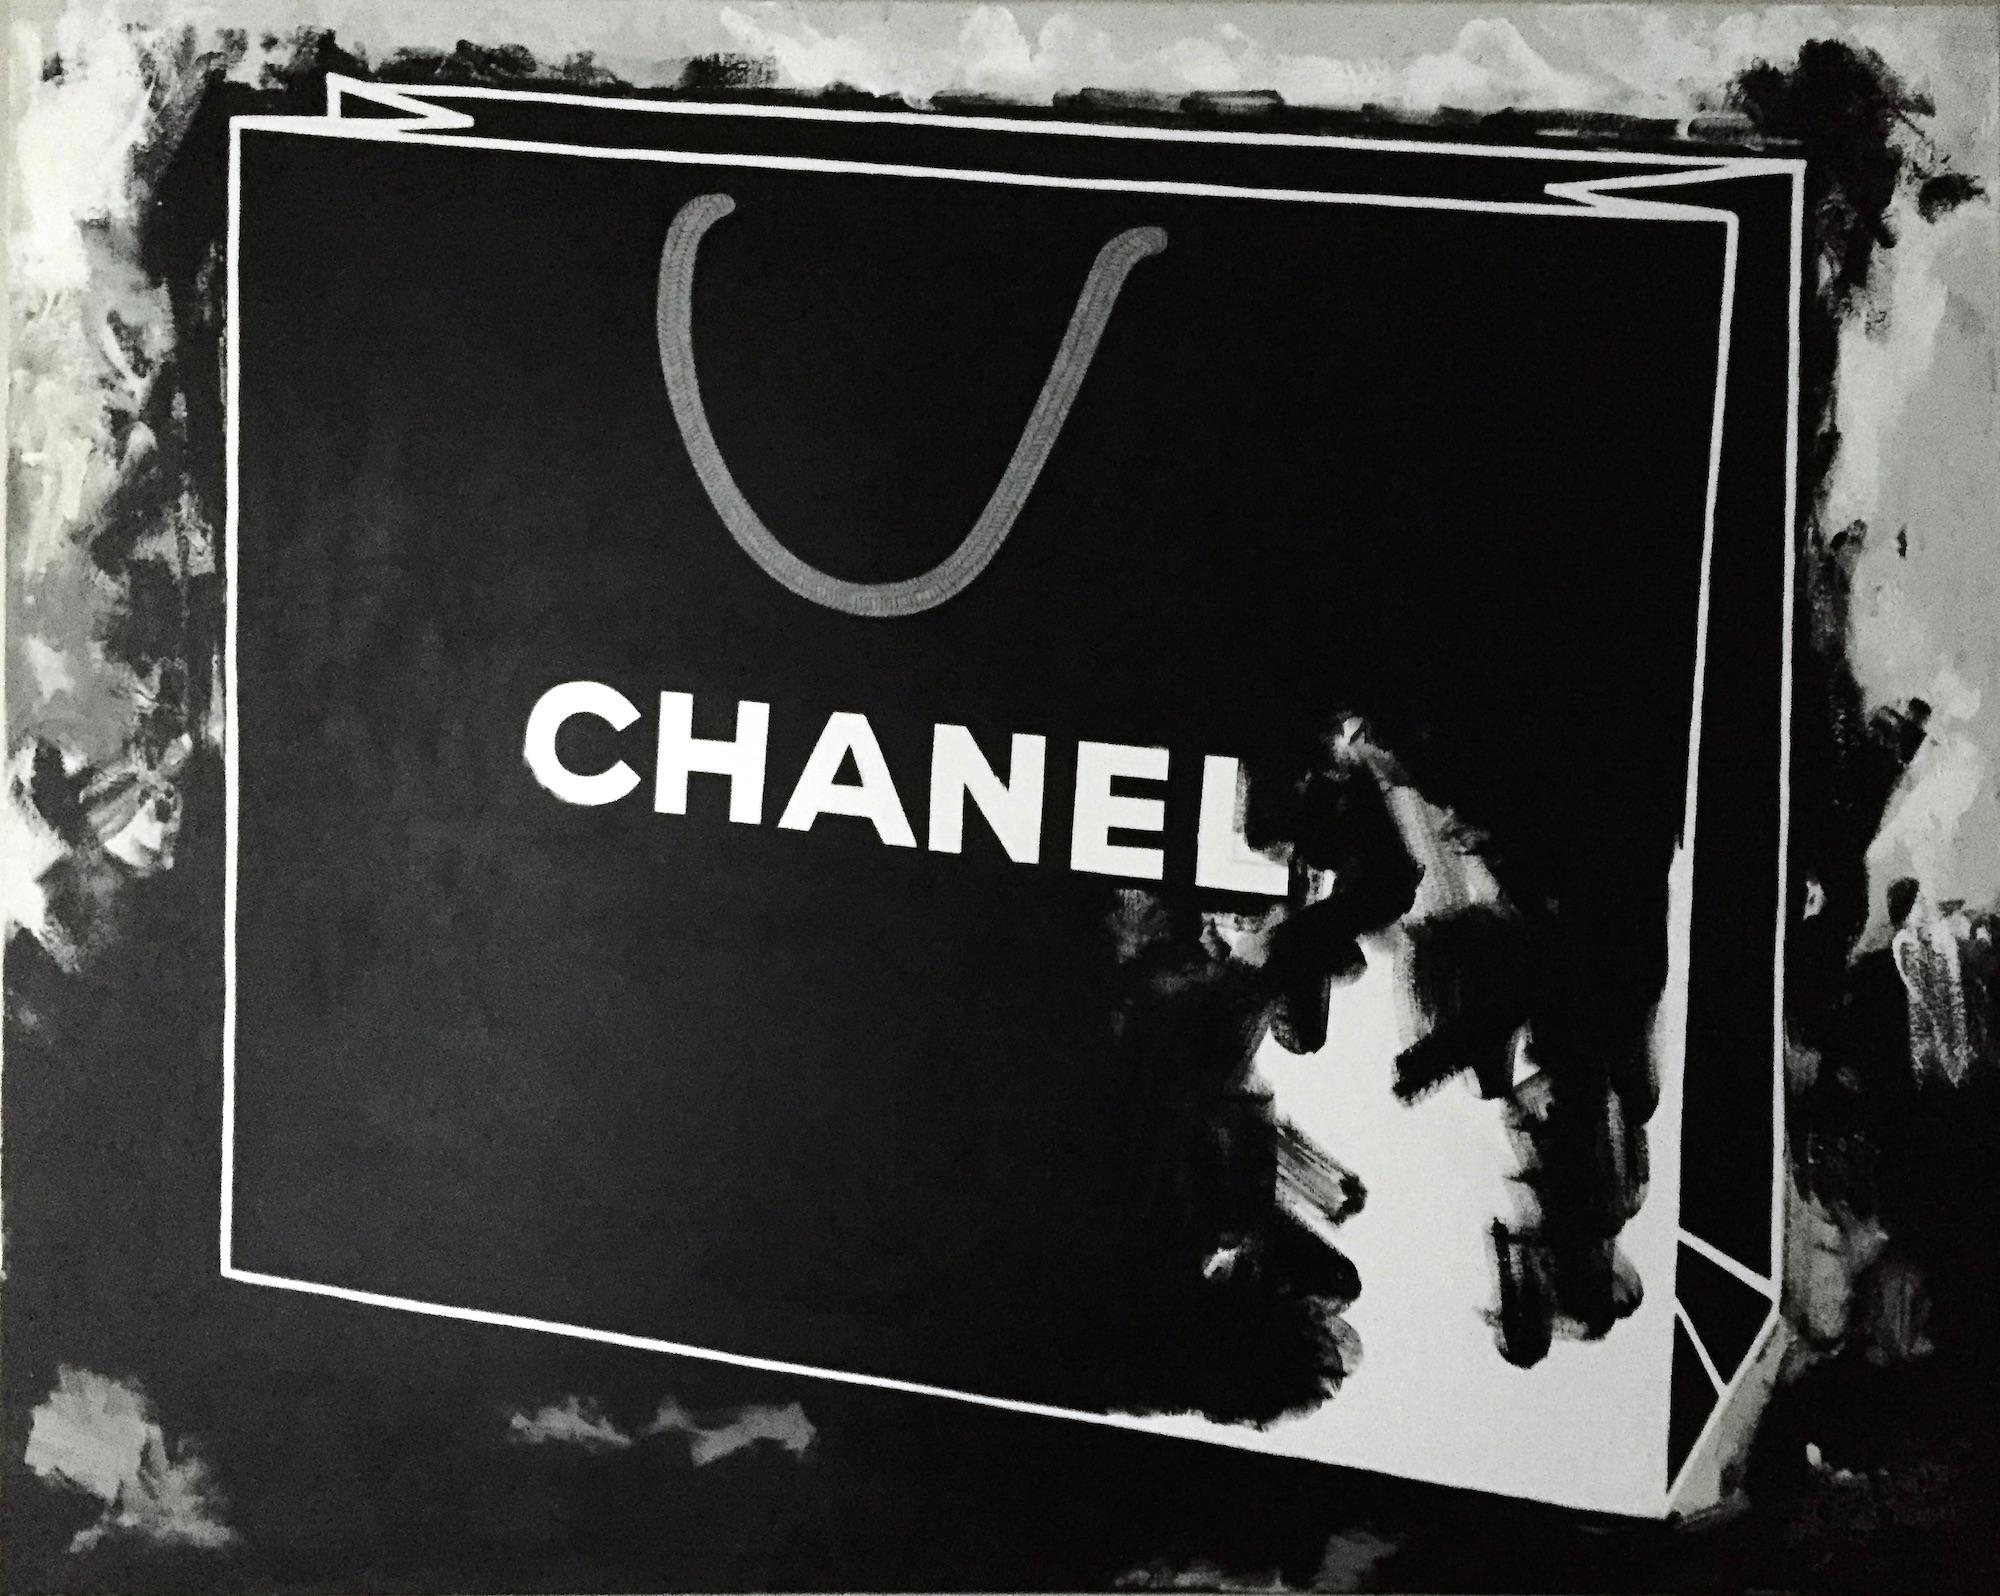 Mon sac Chanel - 48 "x60", Nature morte, Sac Chanel